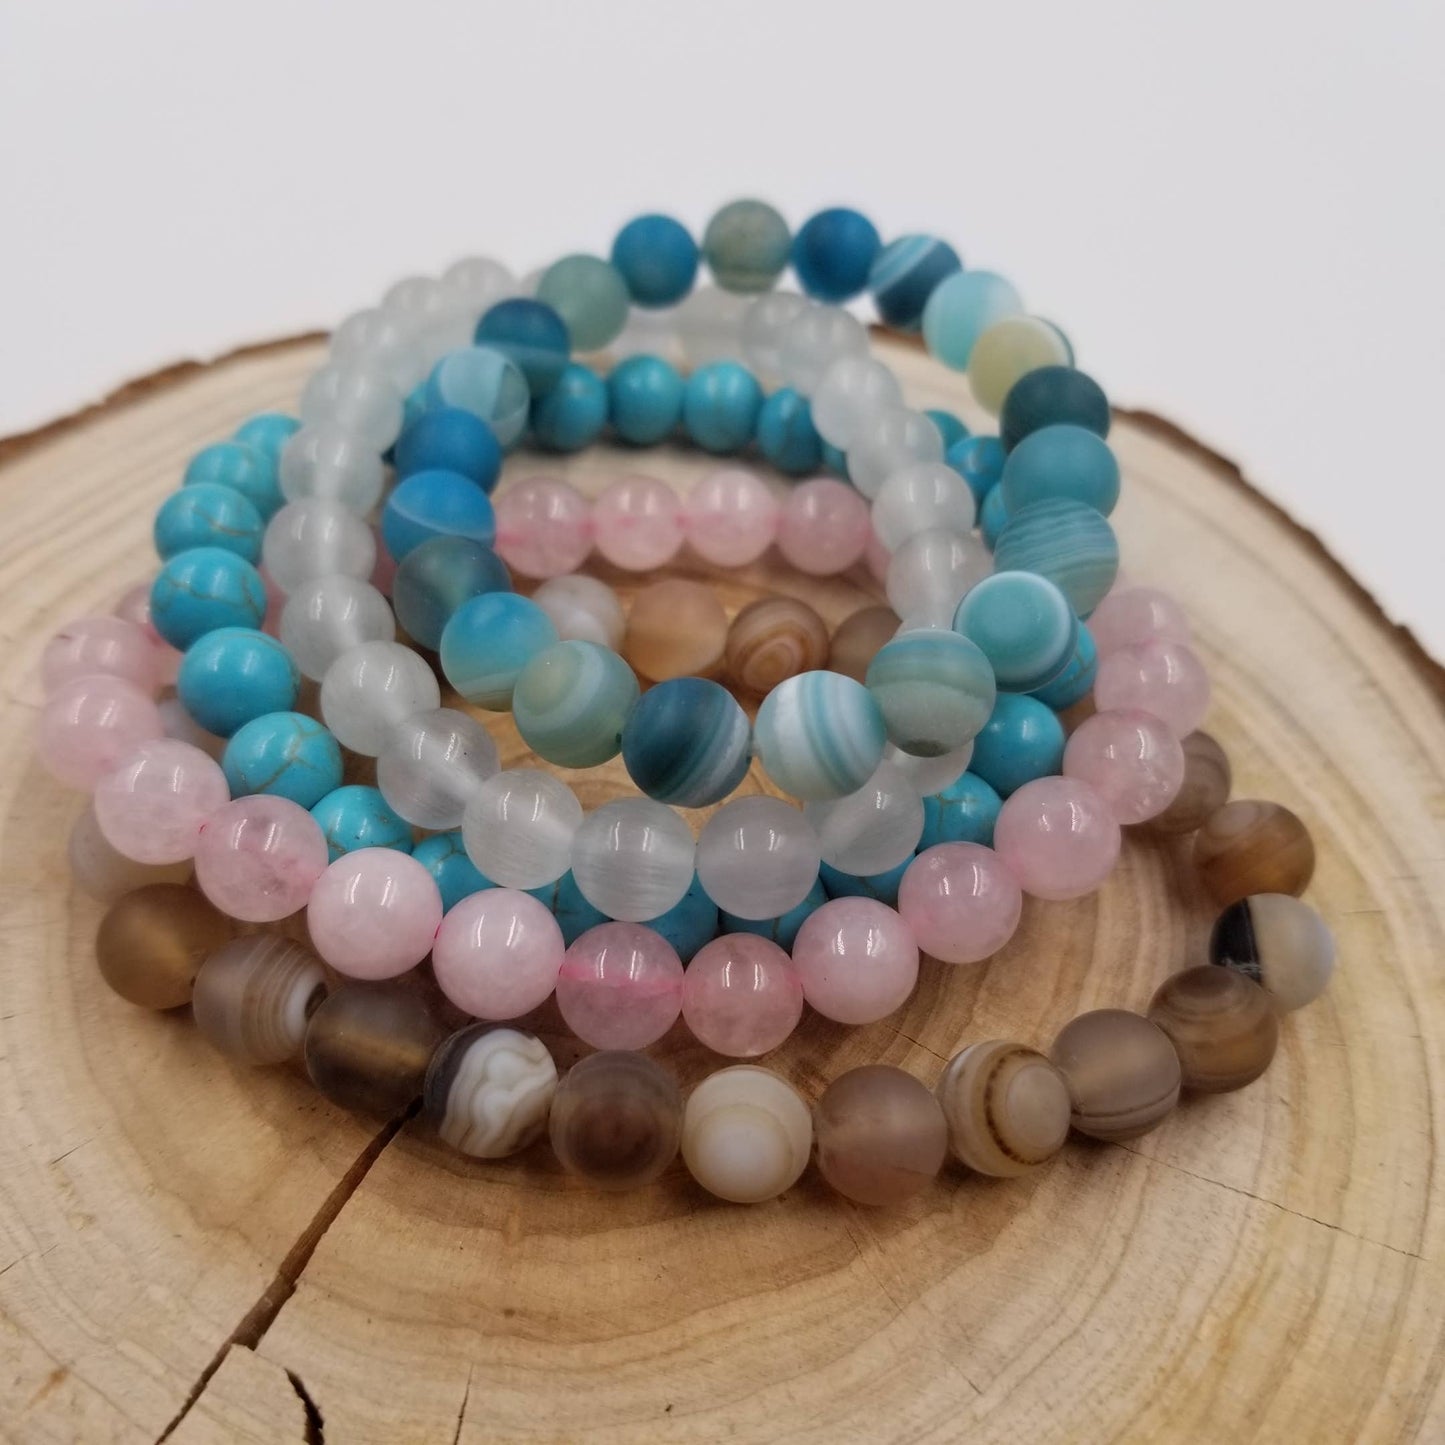 CHAKRA JEWELRY - 8MM Energy Natural Stone Beads Yoga Bracelet: Turquoise